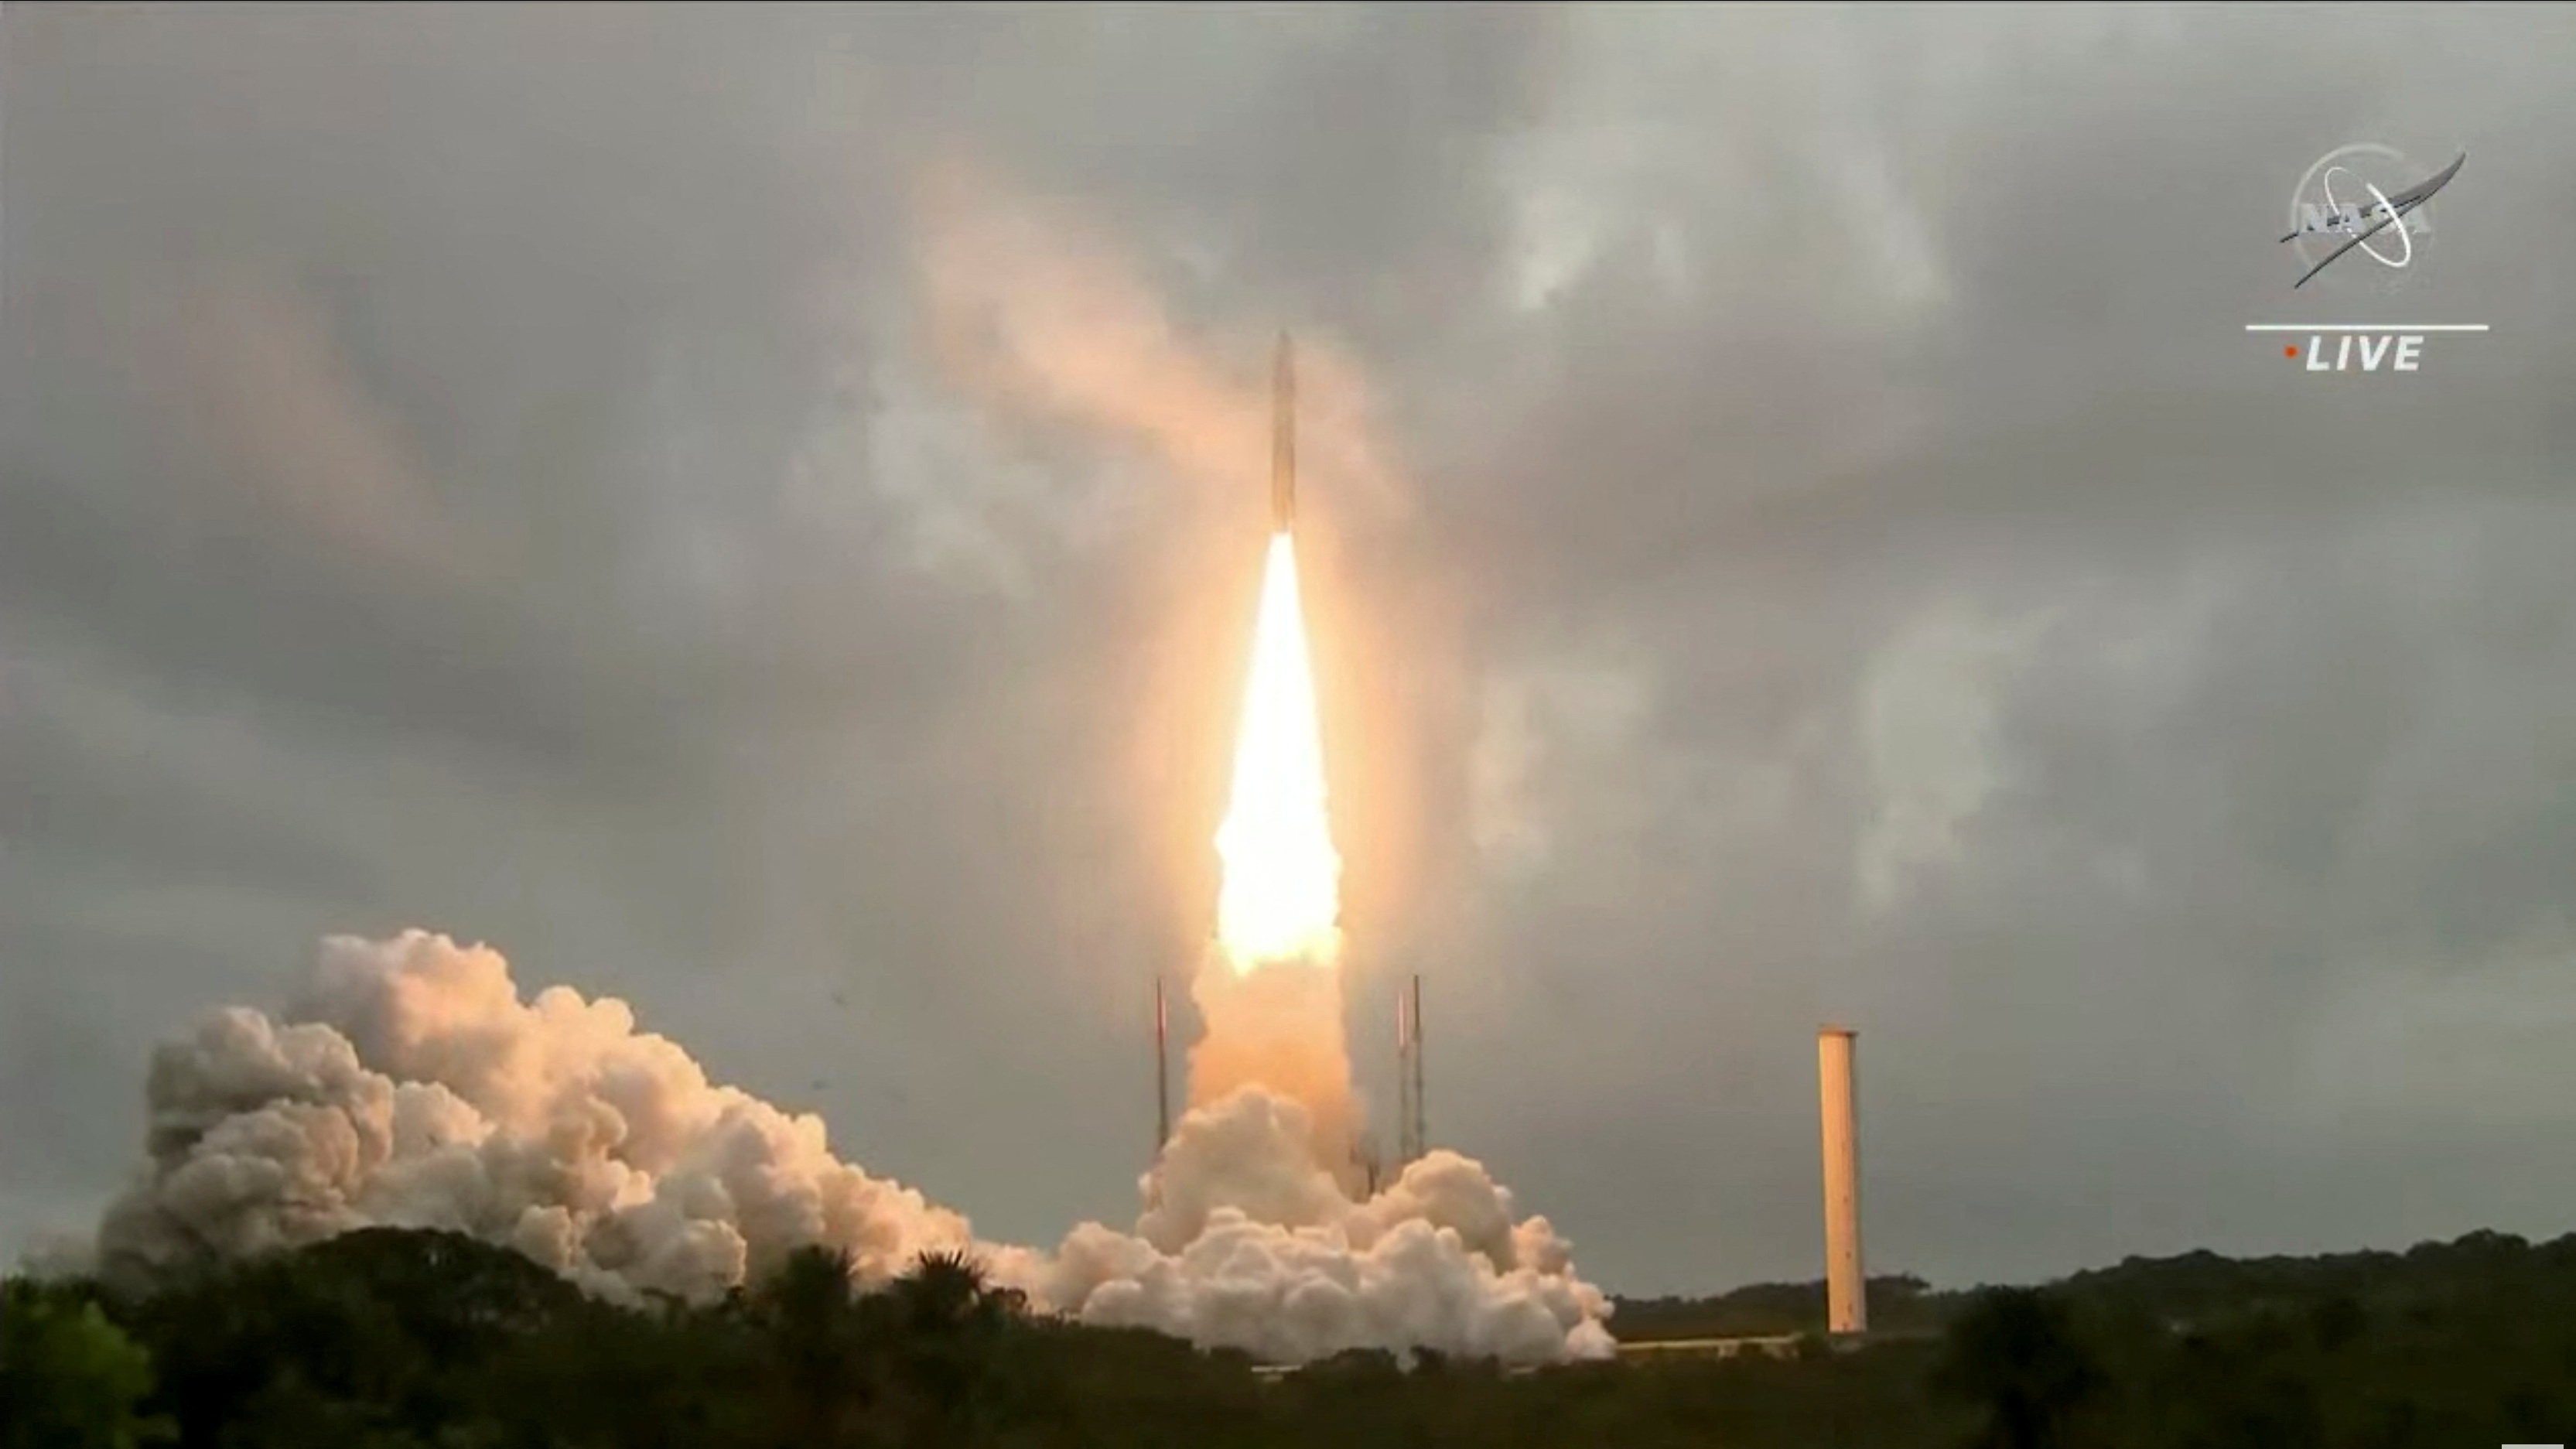 FOTO DE ARCHIVO: El cohete Ariane 5 de Arianespace lanza desde el puerto espacial europeo, el Centro Espacial Guayanés en Kourou, Guayana Francesa el 25 de diciembre de 2021 en una imagen fija de vídeo (Reuters)